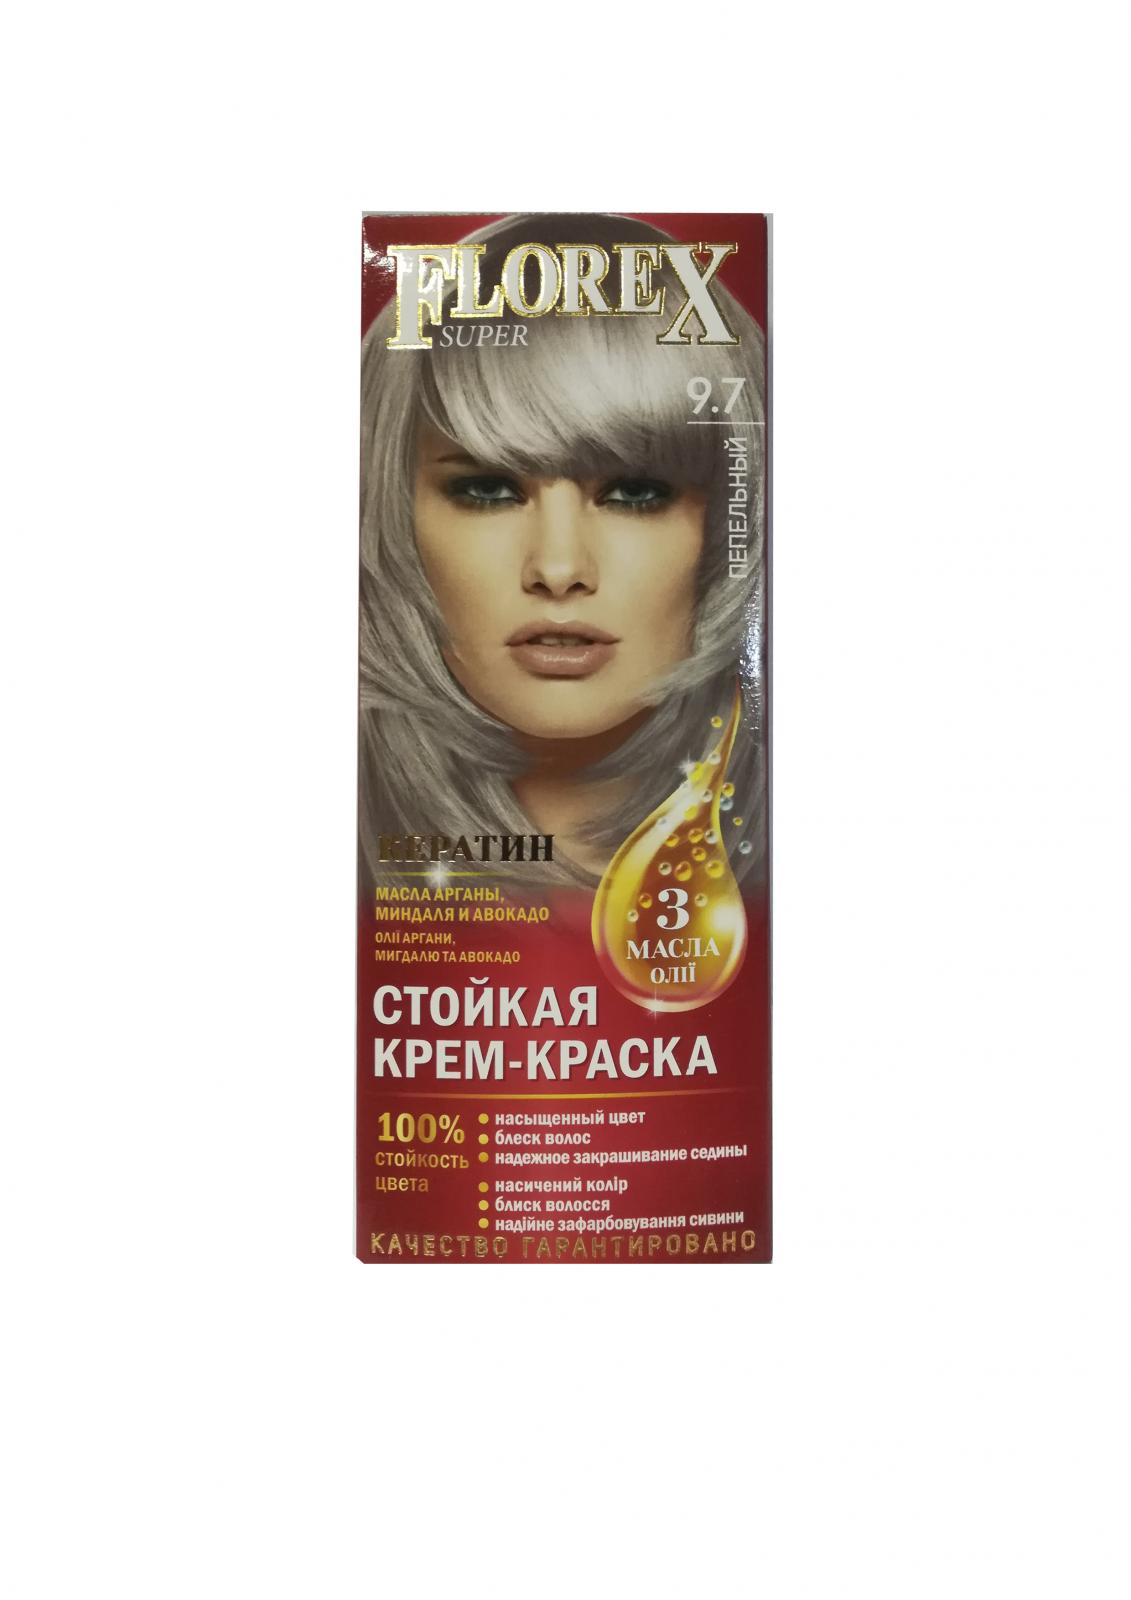 Стойкая крем-краска д/волос "Florex super", тон .9.7 Пепельный